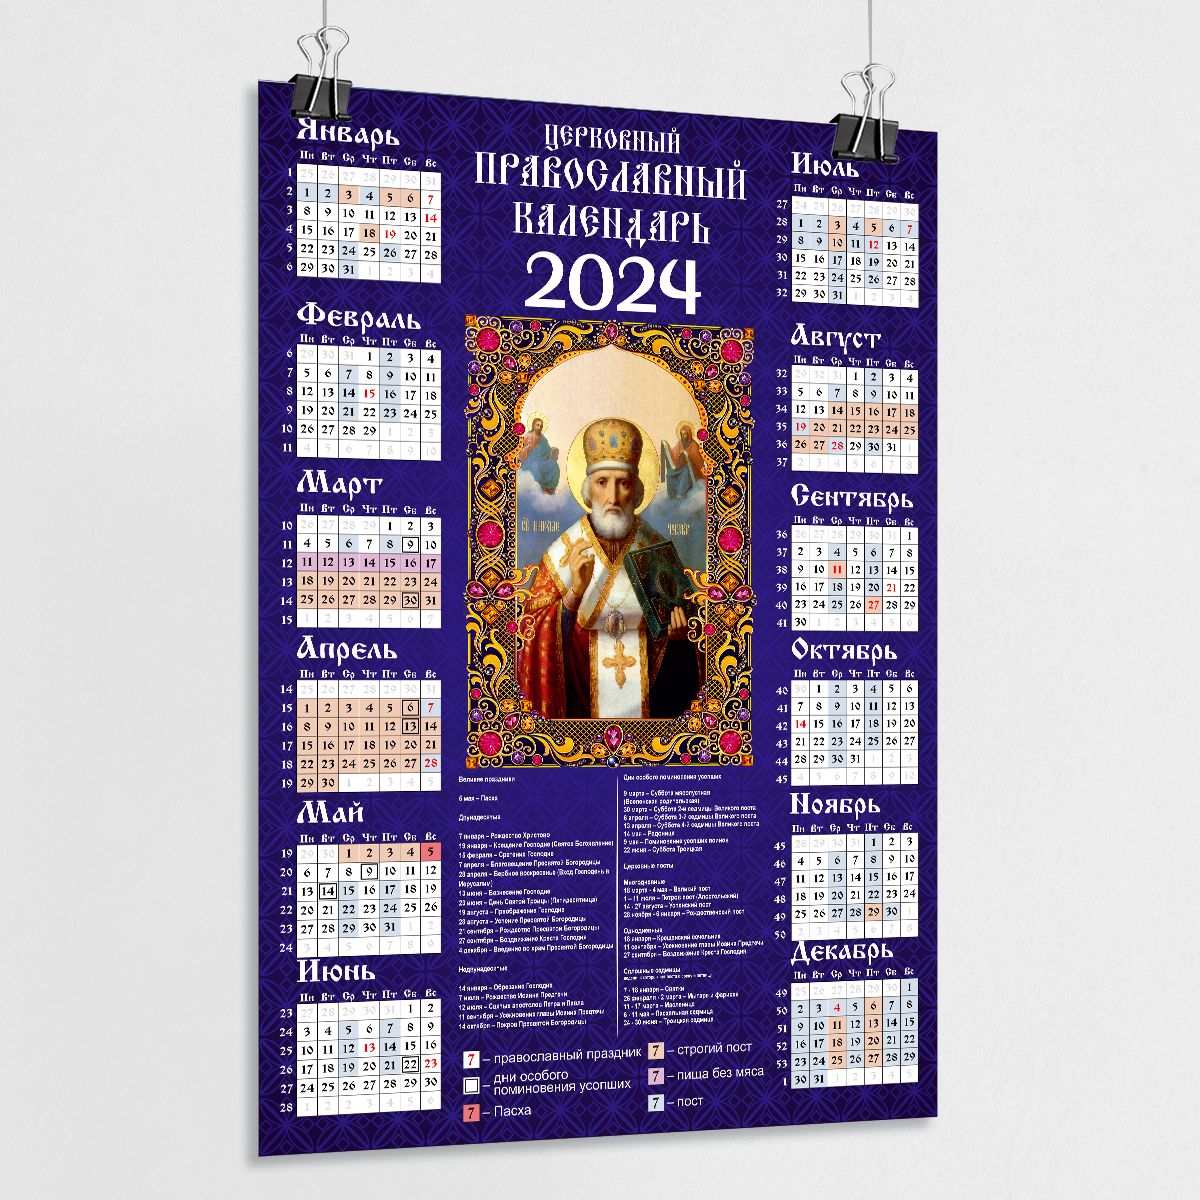 4 апреля 2024 православный праздник. Церковный календарь на 2024 православный. Православный календарь на 2024 год. Православный календарь на 2023. Православный календарь настенный 2024.